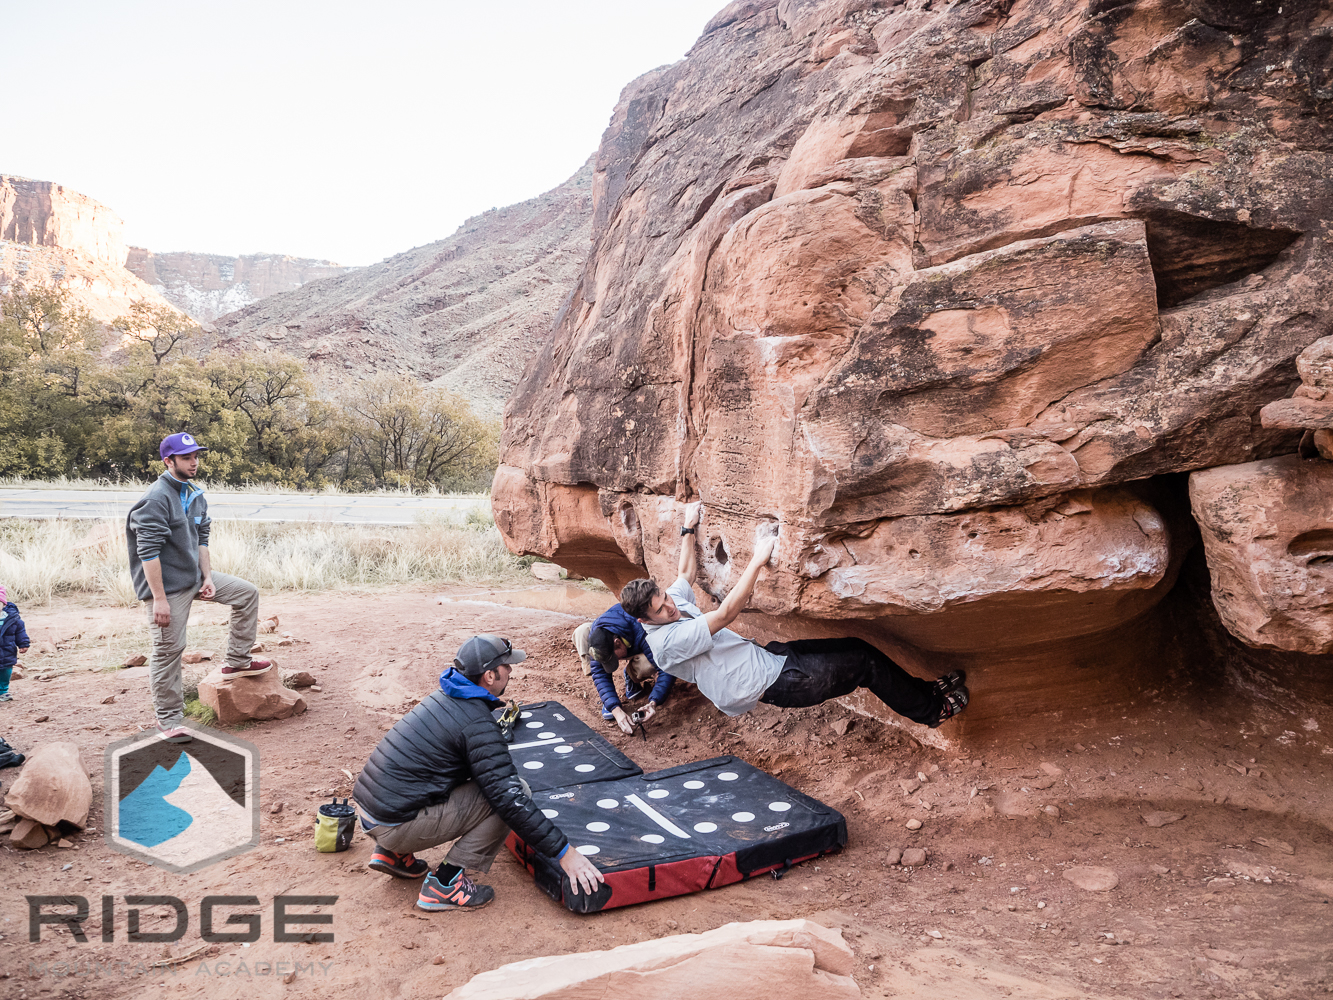 RIDGE in Moab, fall 2015-37.JPG